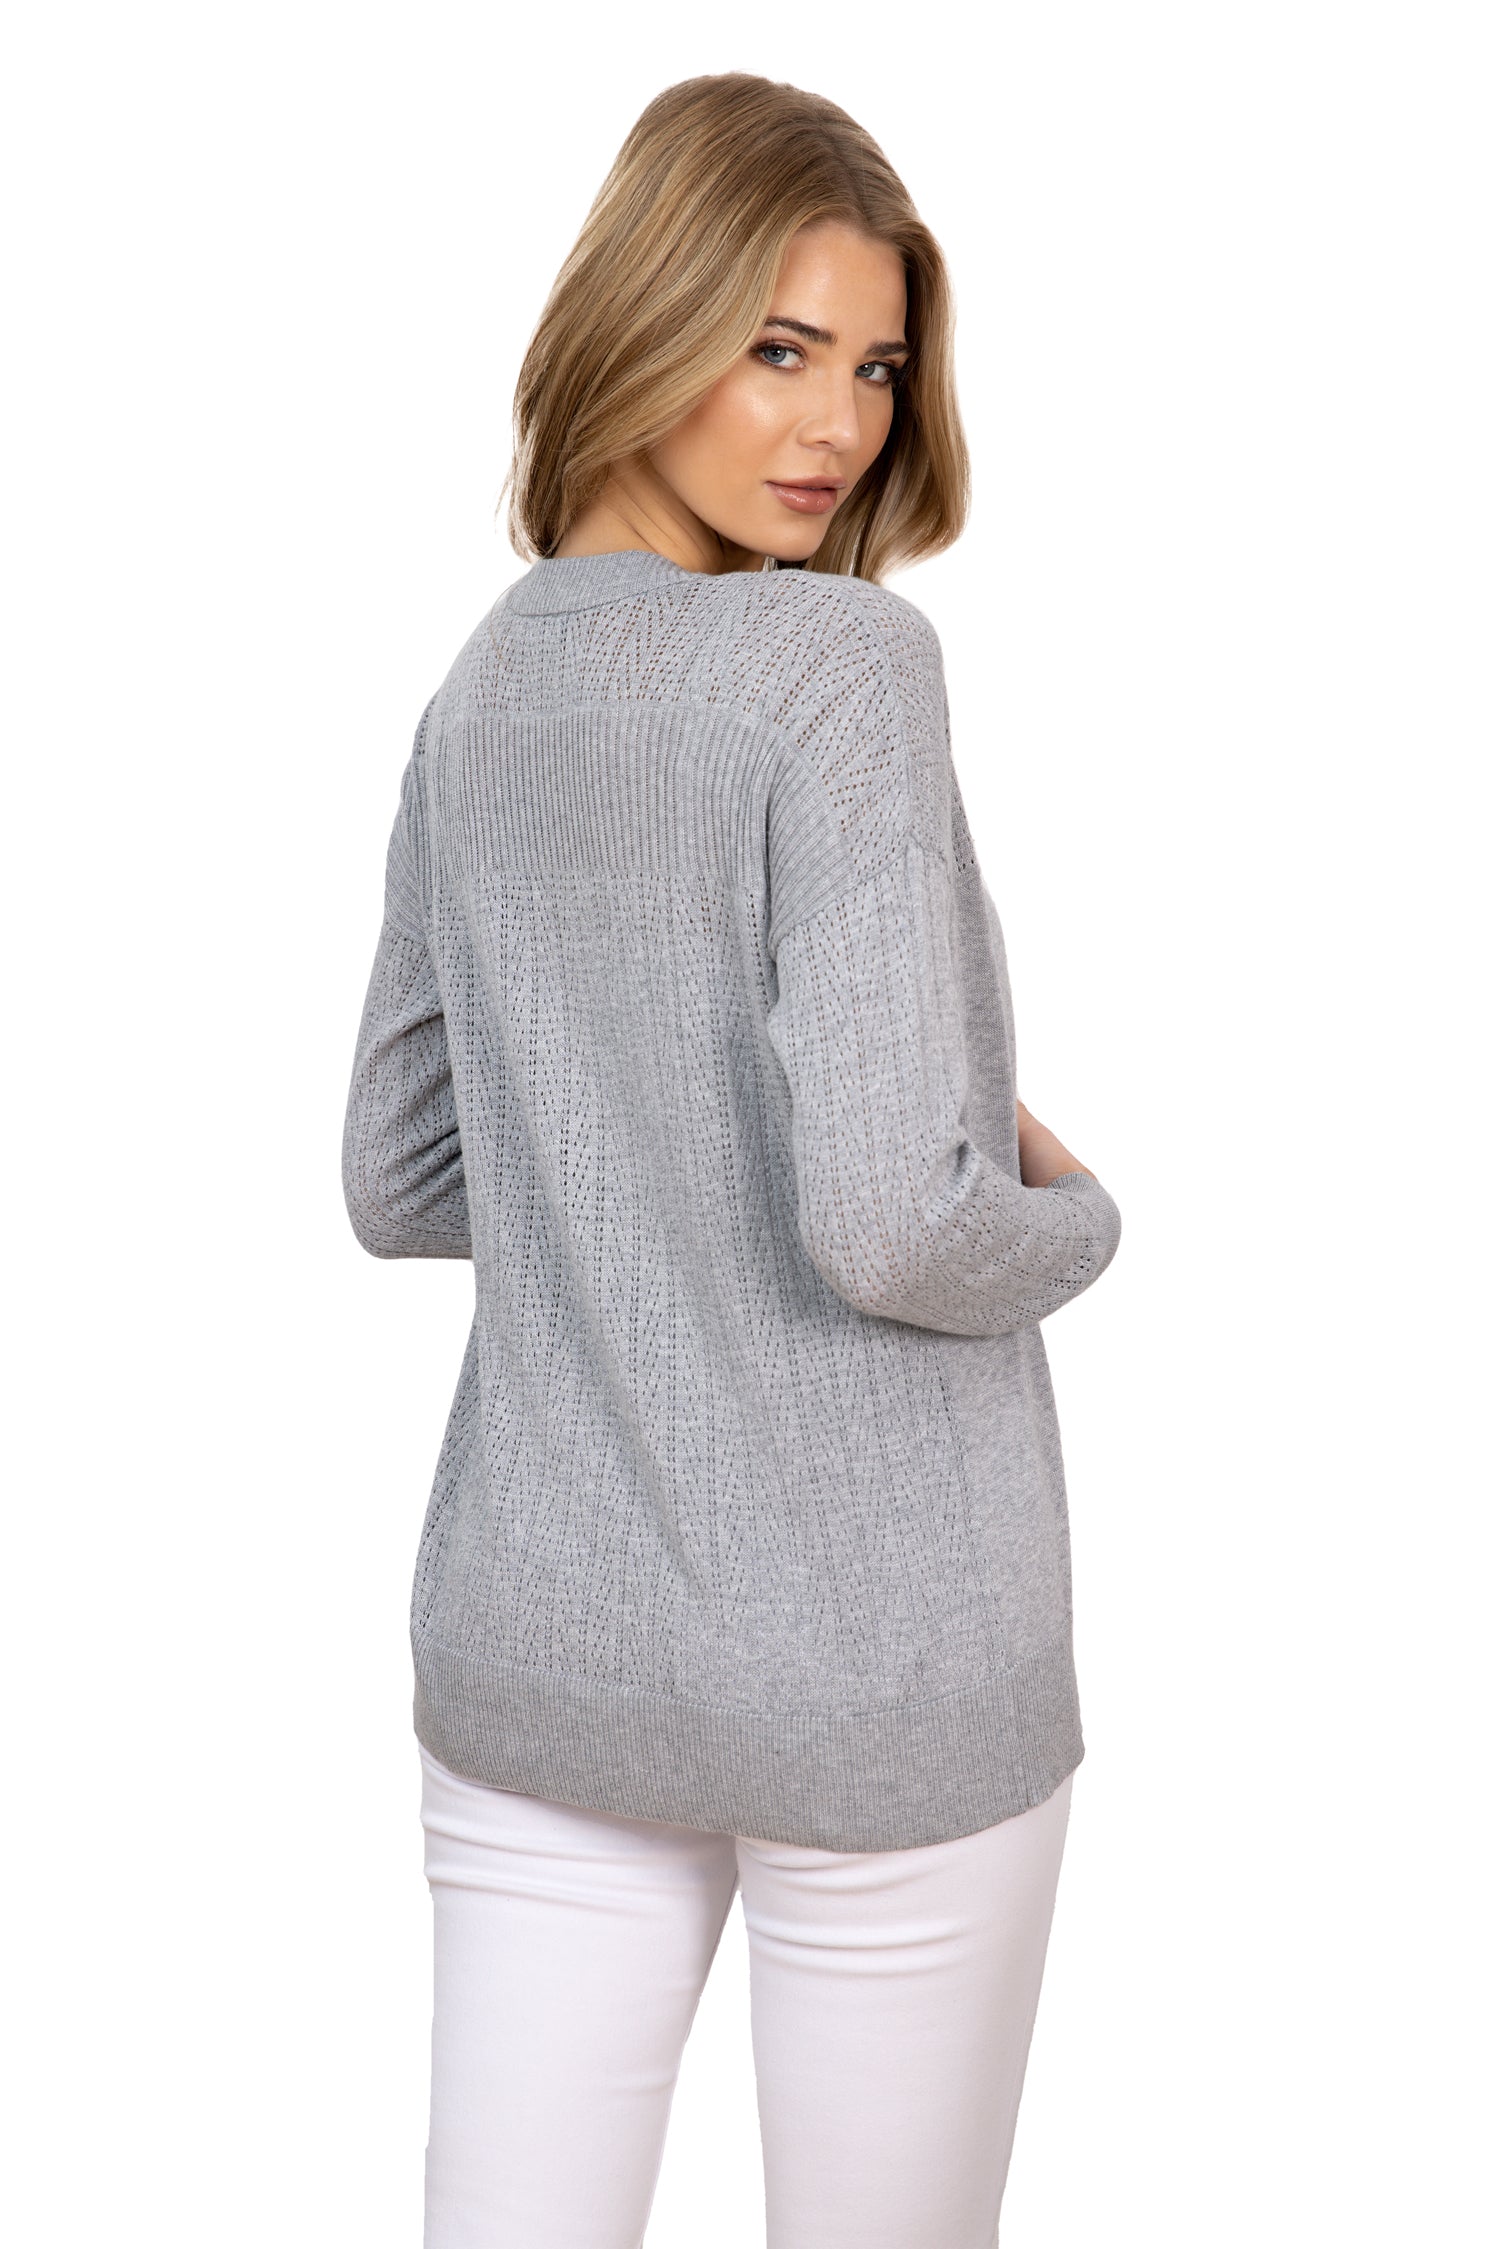 Cárdigan para mujer, suéter de punto liso bloqueado por un patrón de pointelle diagonal